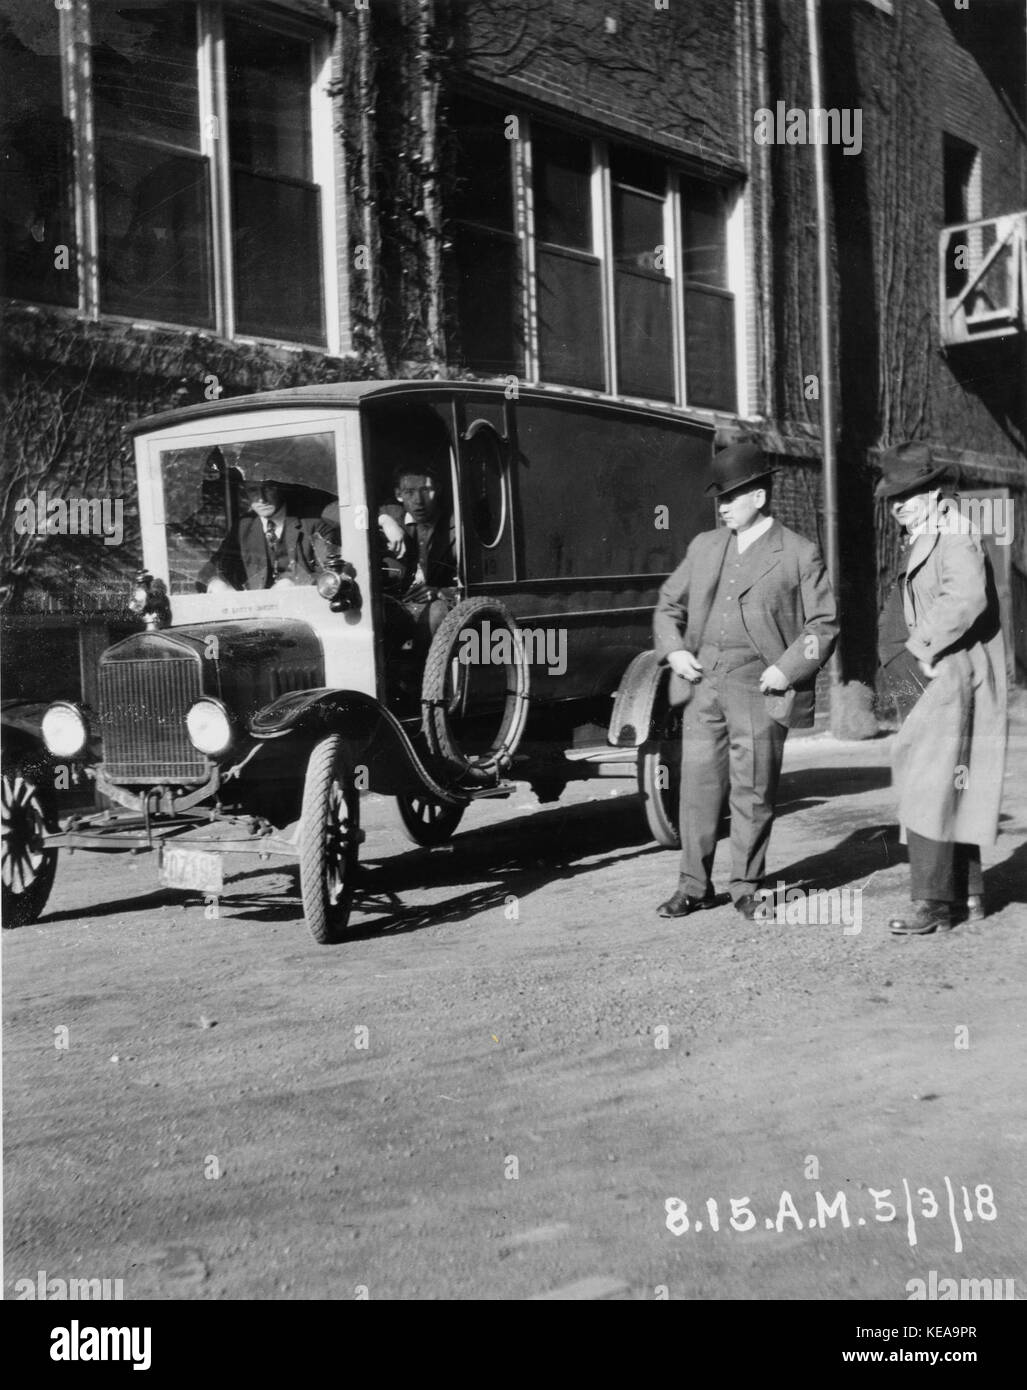 Wagner Electric Company sciopero; due uomini stavano in piedi guardando il veicolo con rotto il parabrezza, con due uomini nel sedile anteriore. Il 3 maggio 1918, 8 15 a.m. Foto Stock